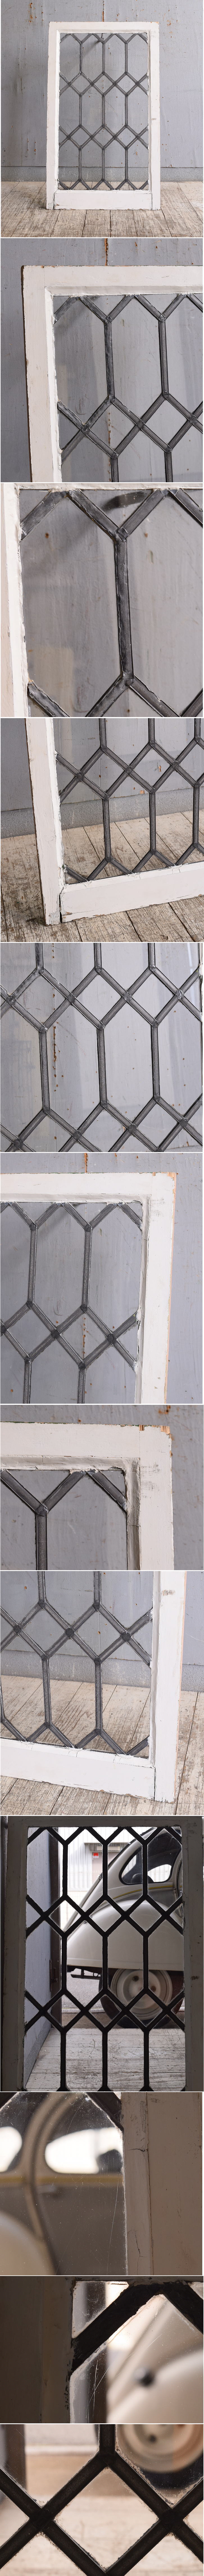 イギリス アンティーク 窓 無色透明 10522